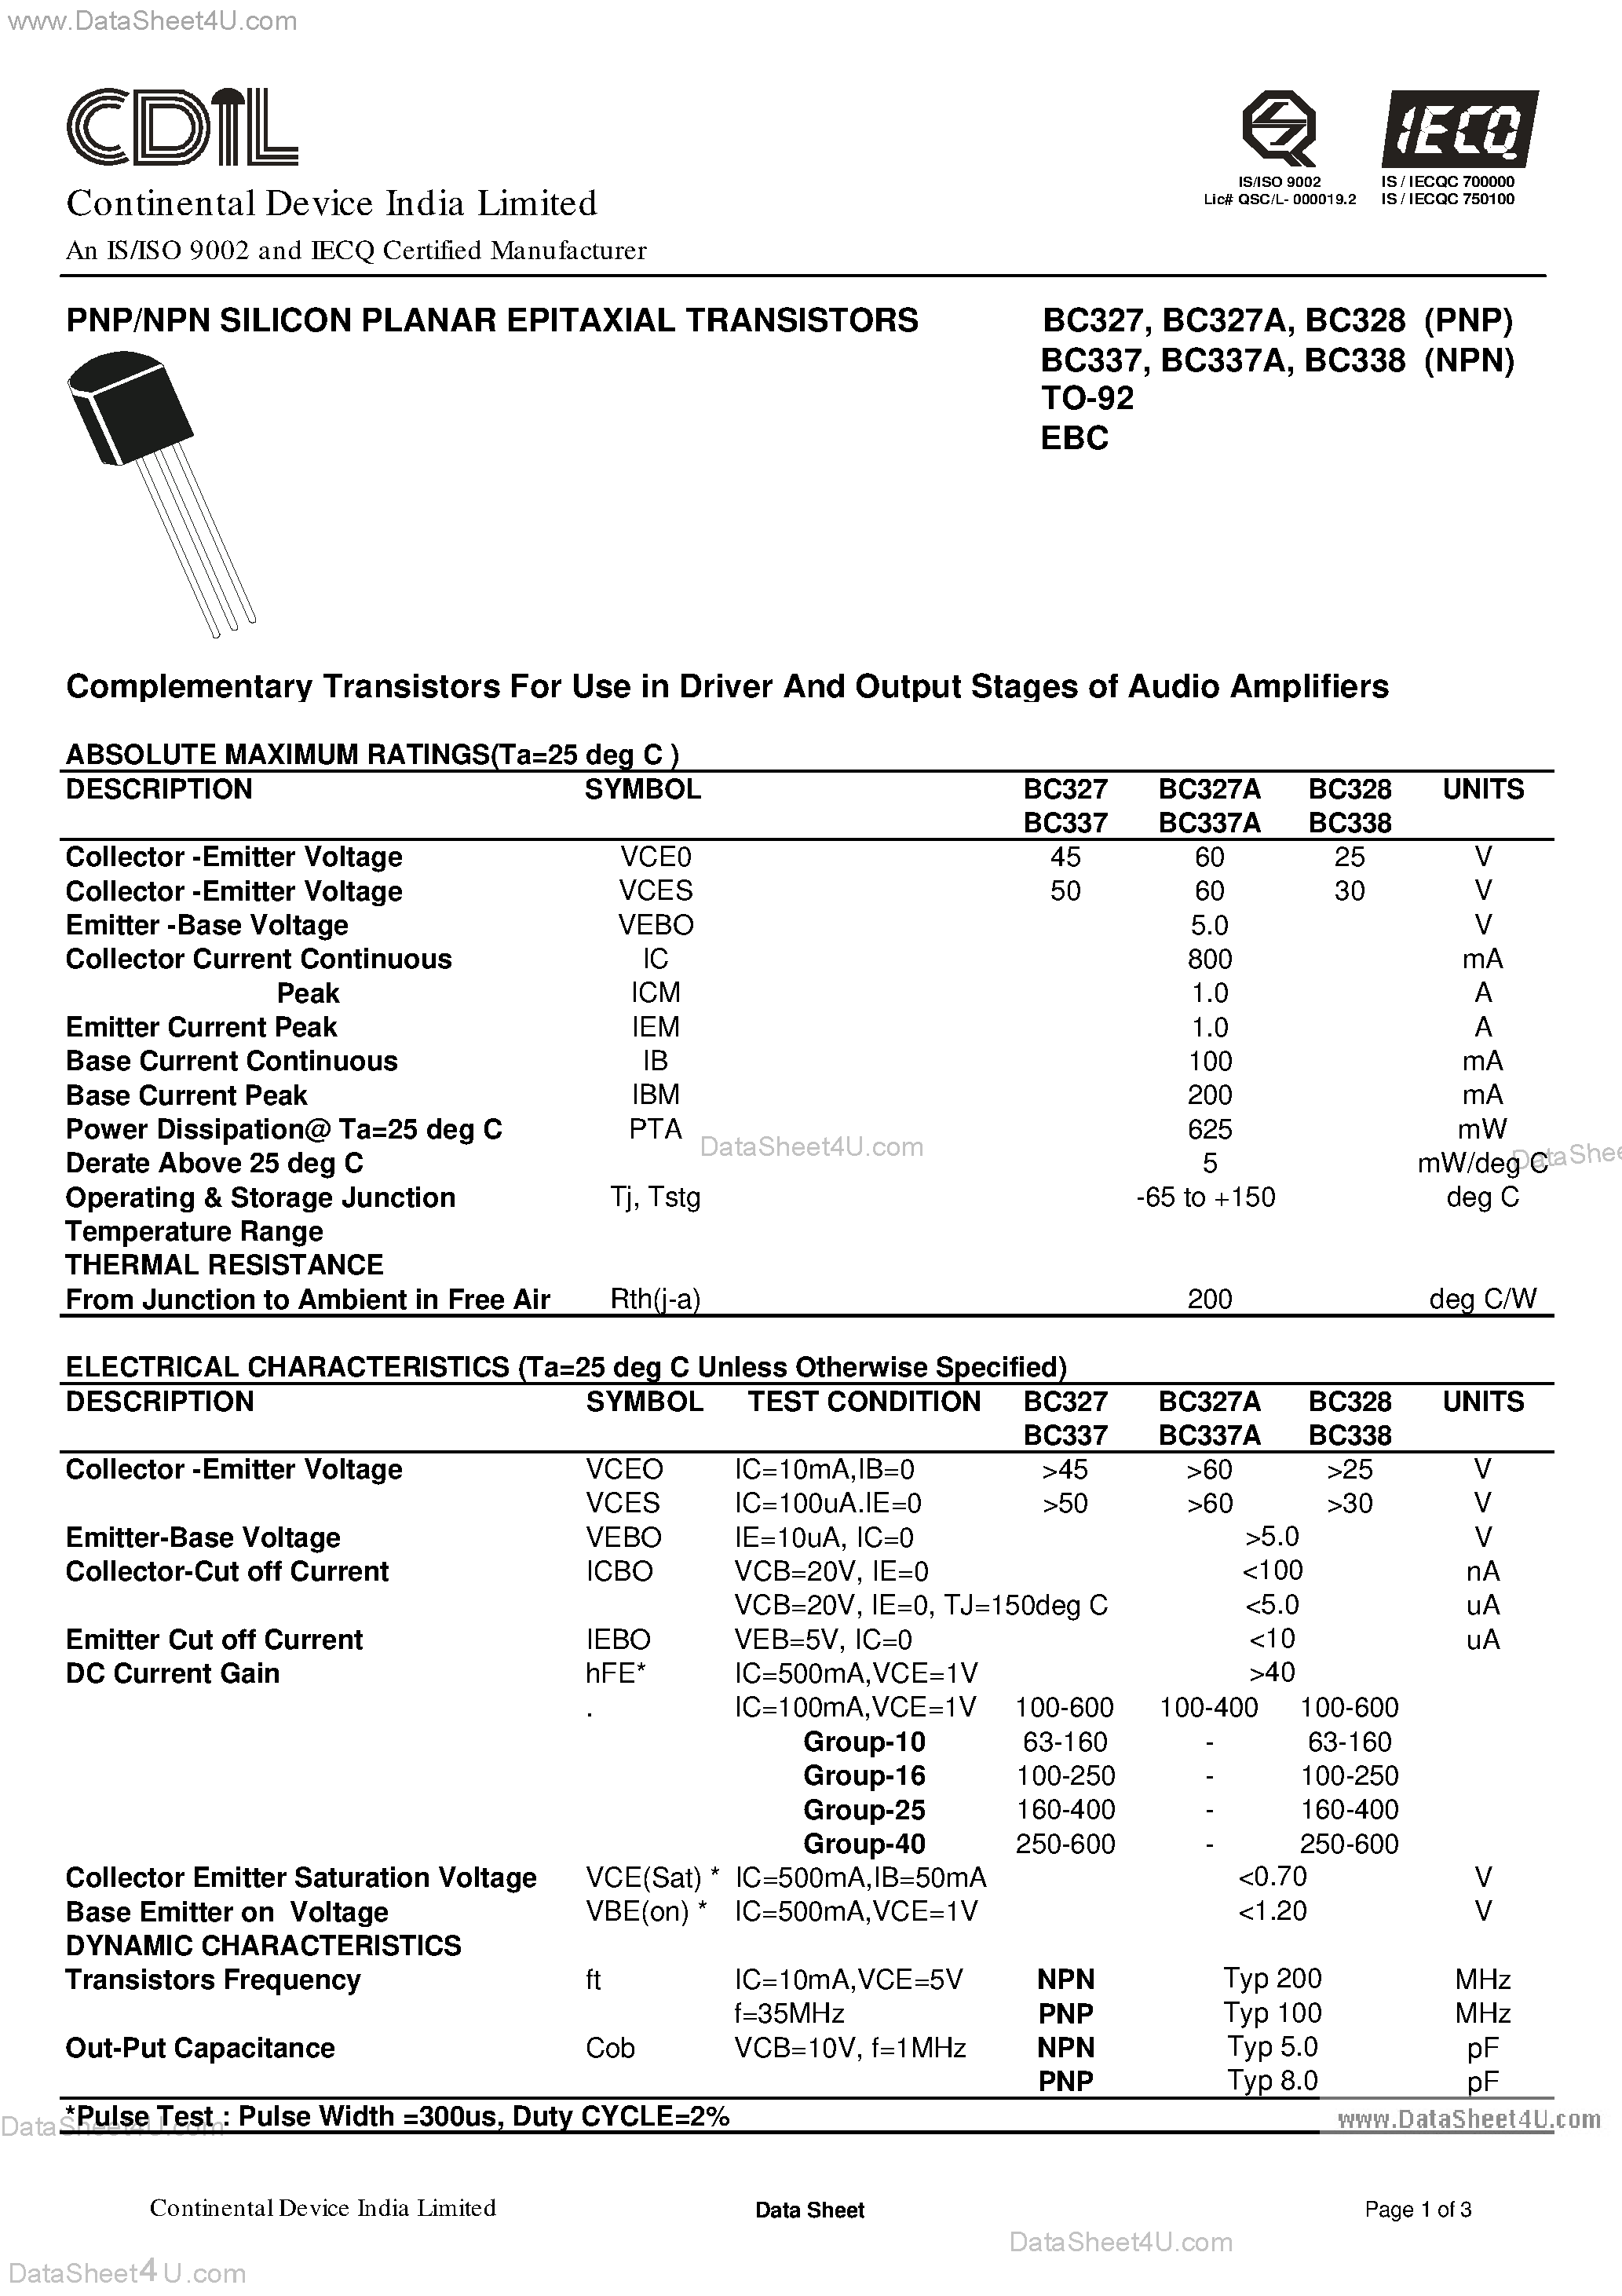 Datasheet BC327 - (BC327 / BC338) PNP/NPN Silicon Planar Epitaxial Transistors page 1